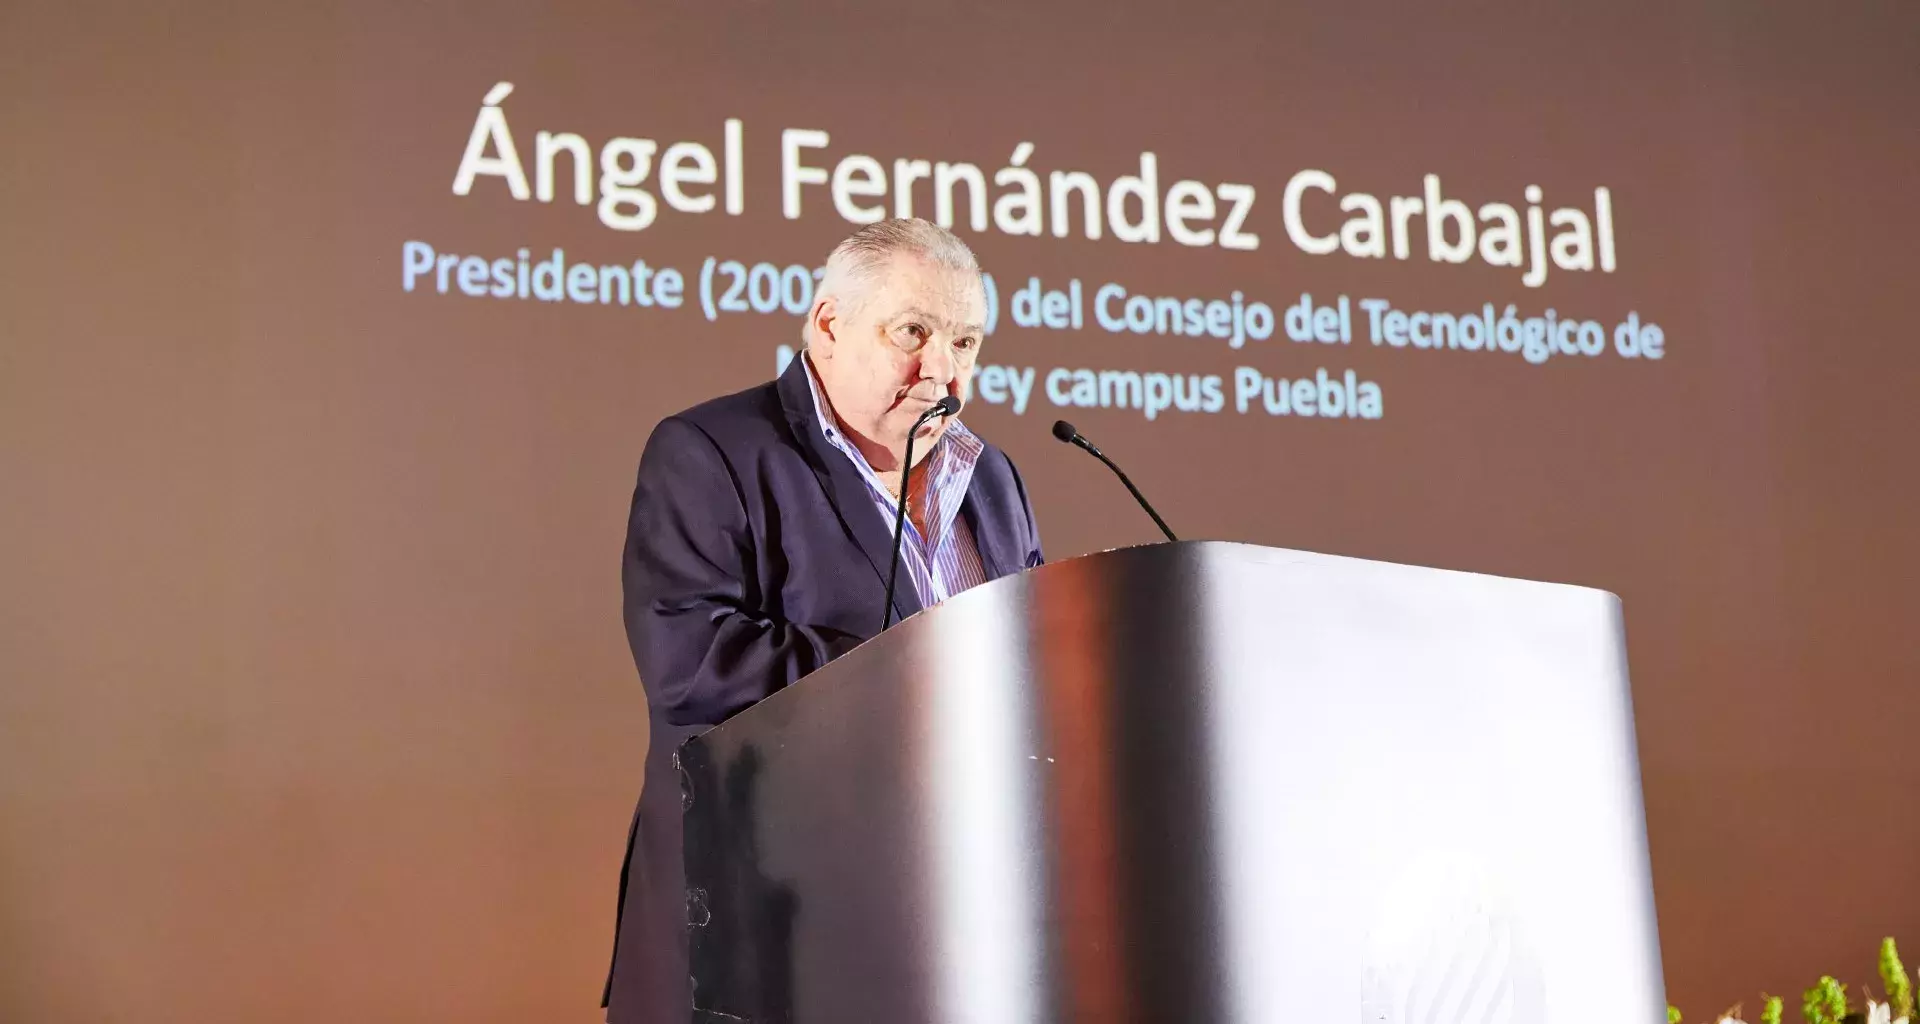 Ángel Fernández Carbajal, consejero honorario del Tec campus Puebla, recibiendo la moneda conmemorativa Eugenio Garza Sada